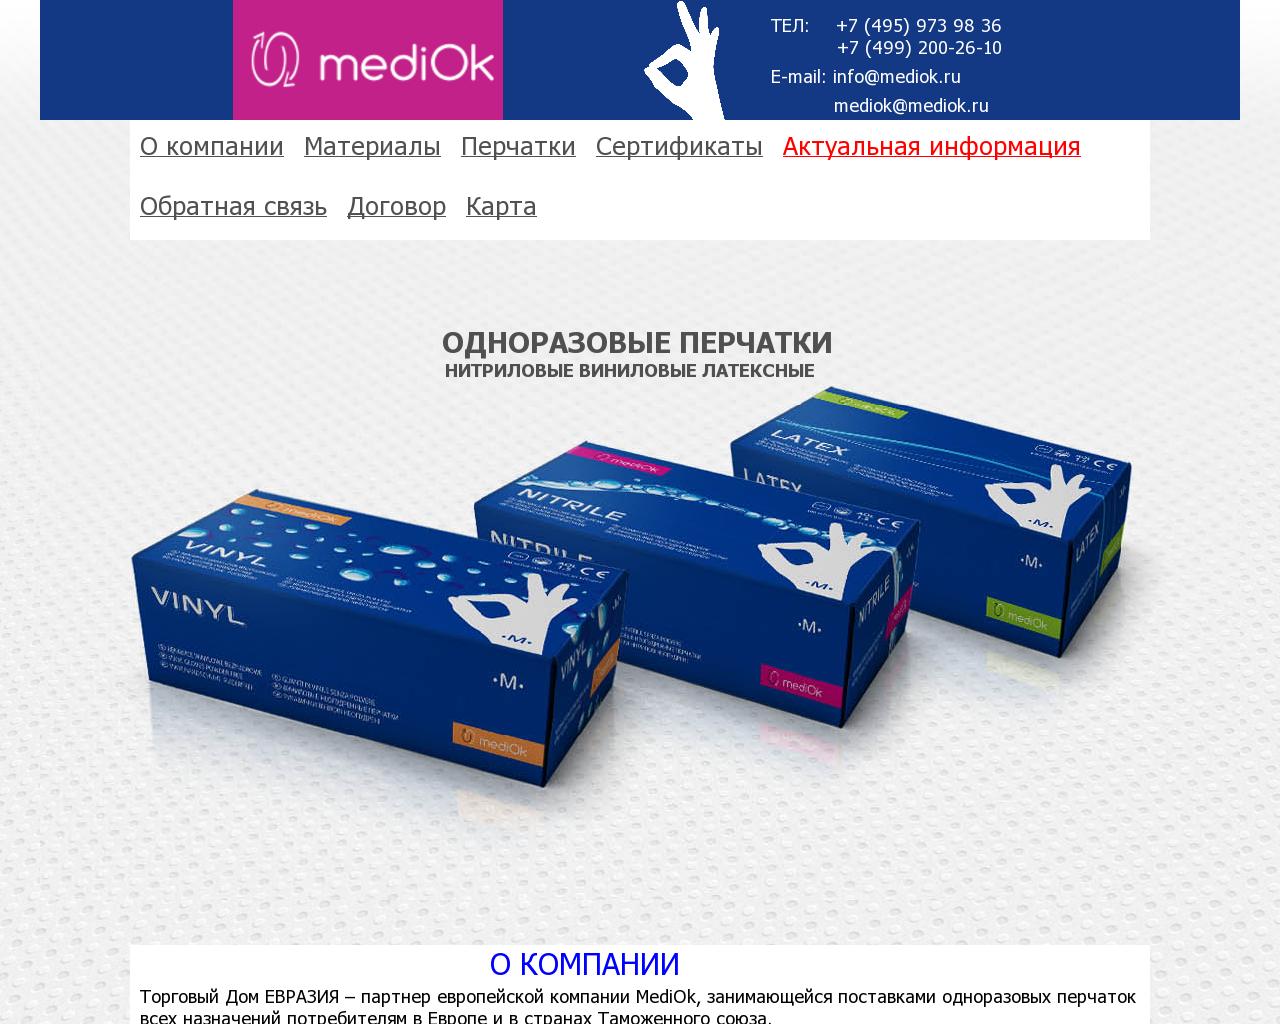 Изображение сайта mediok.ru в разрешении 1280x1024